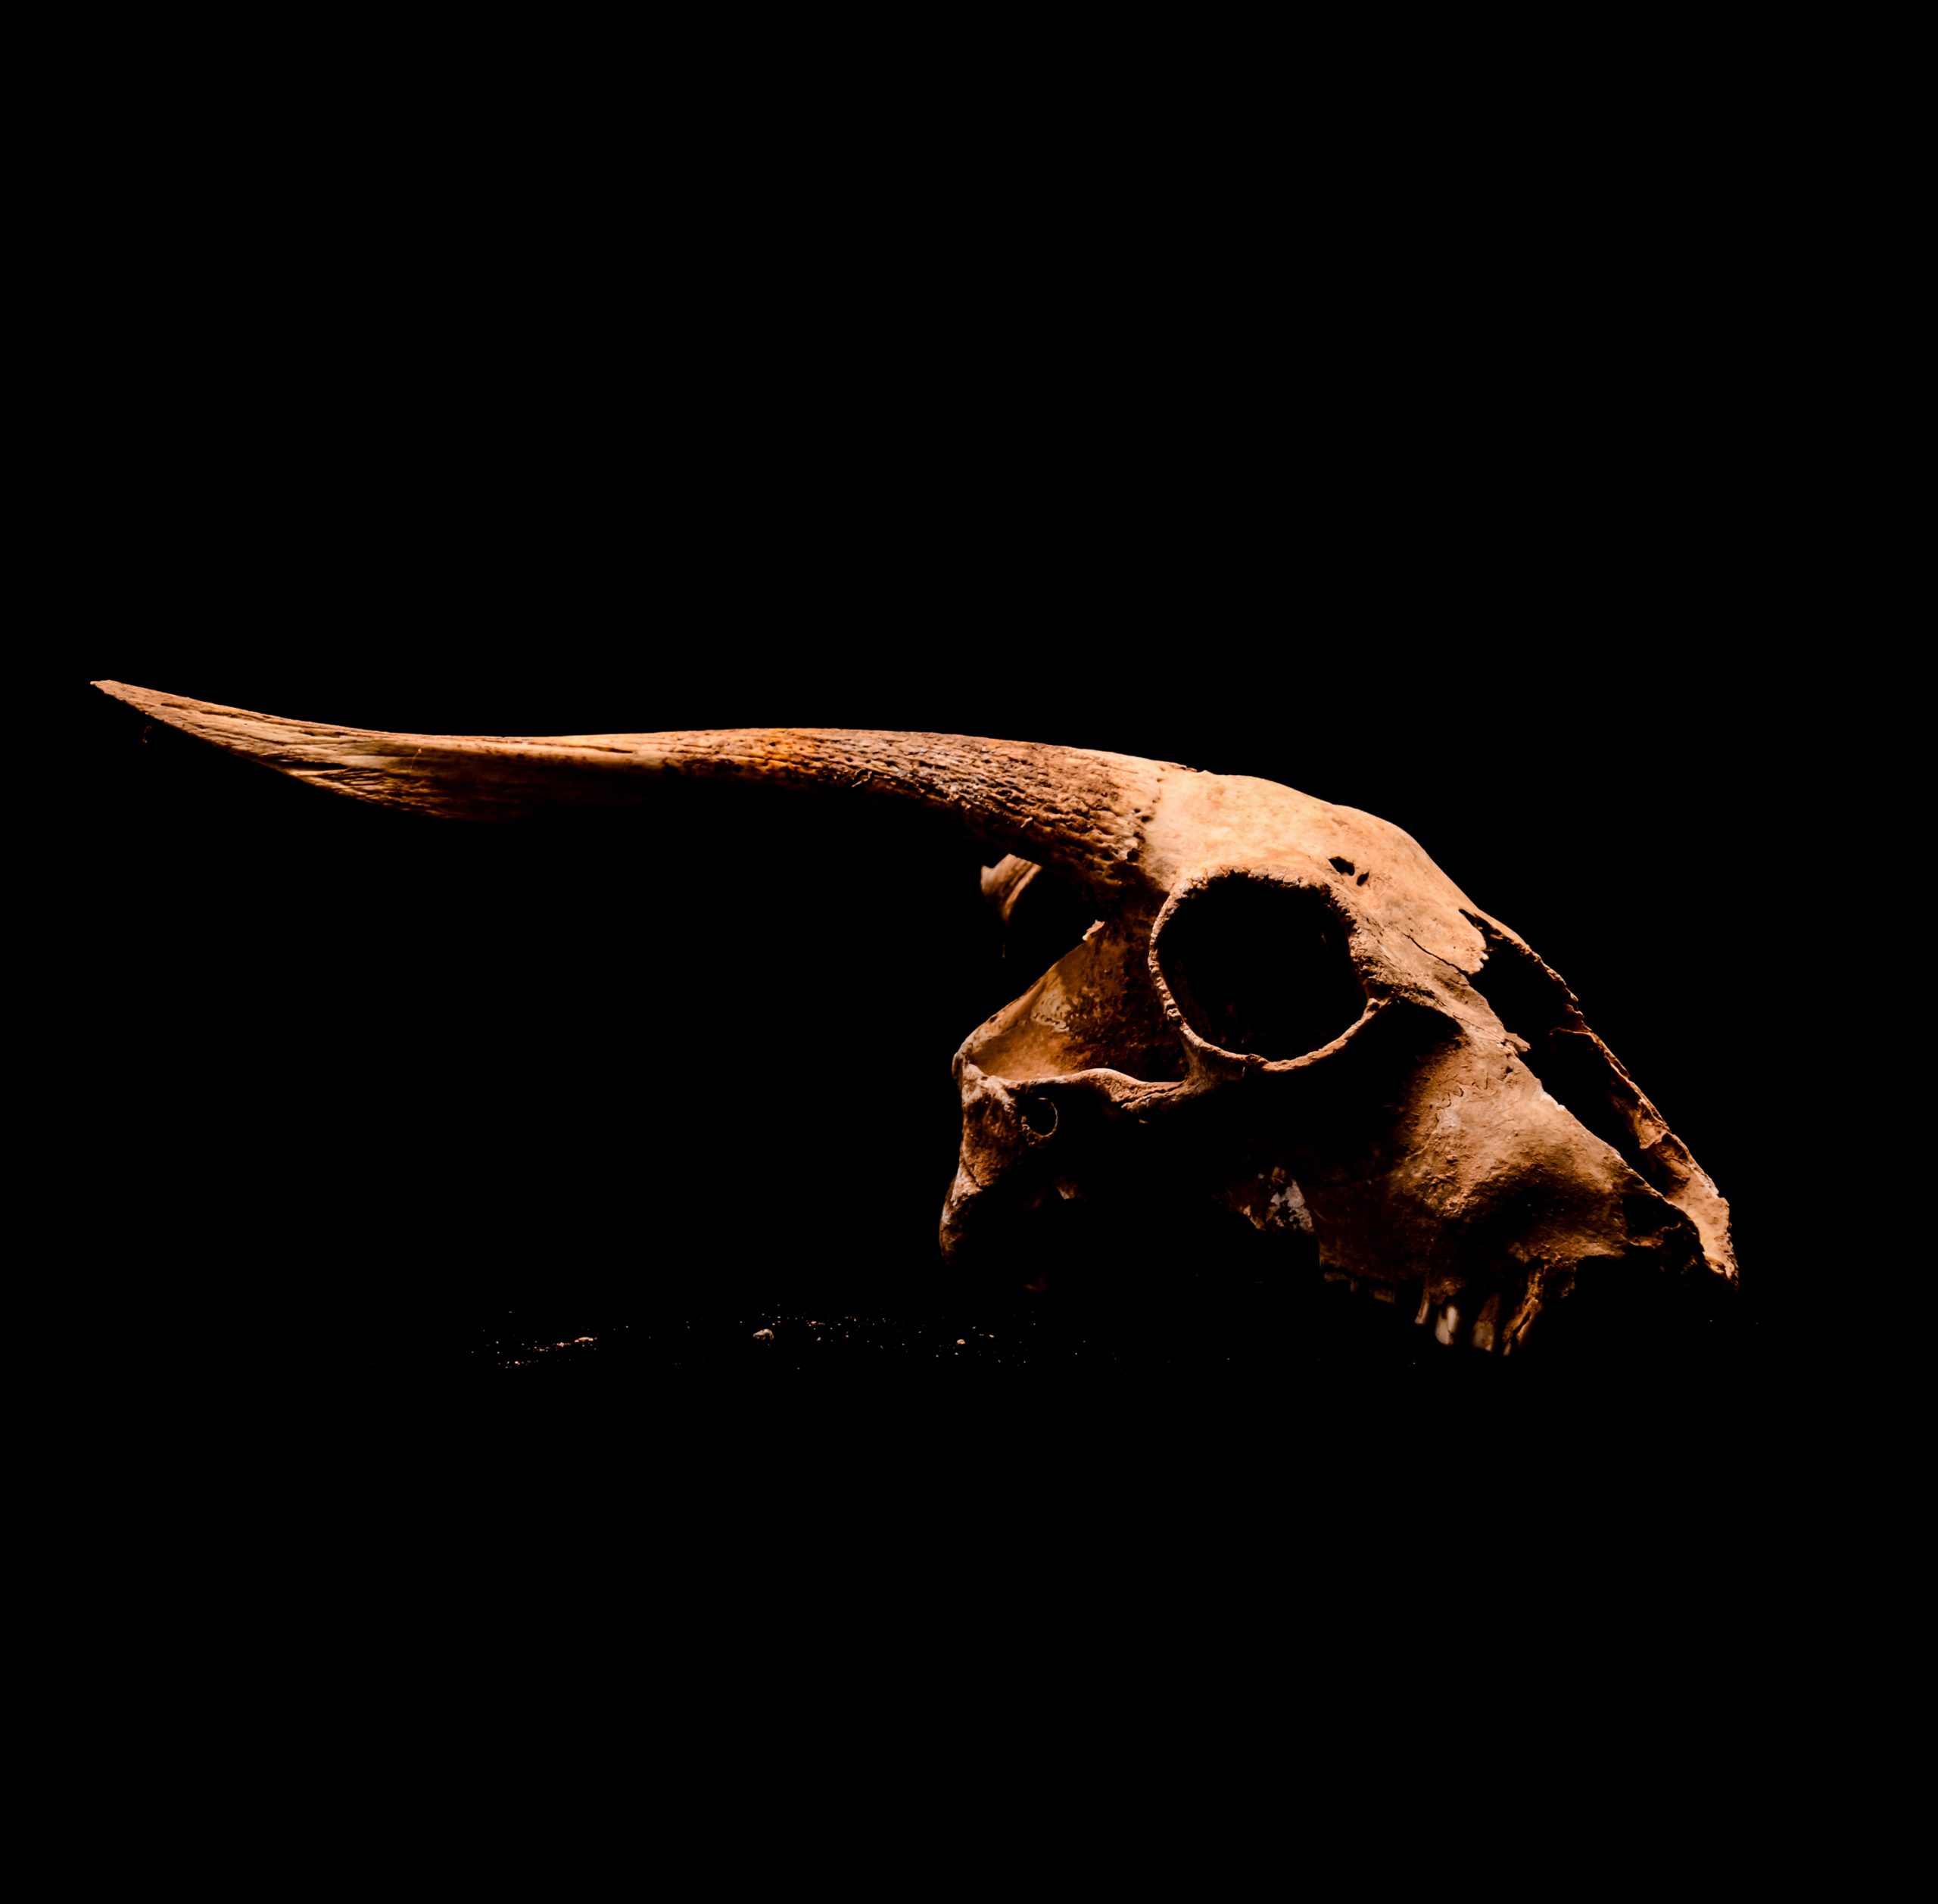 Goat skull on black background.